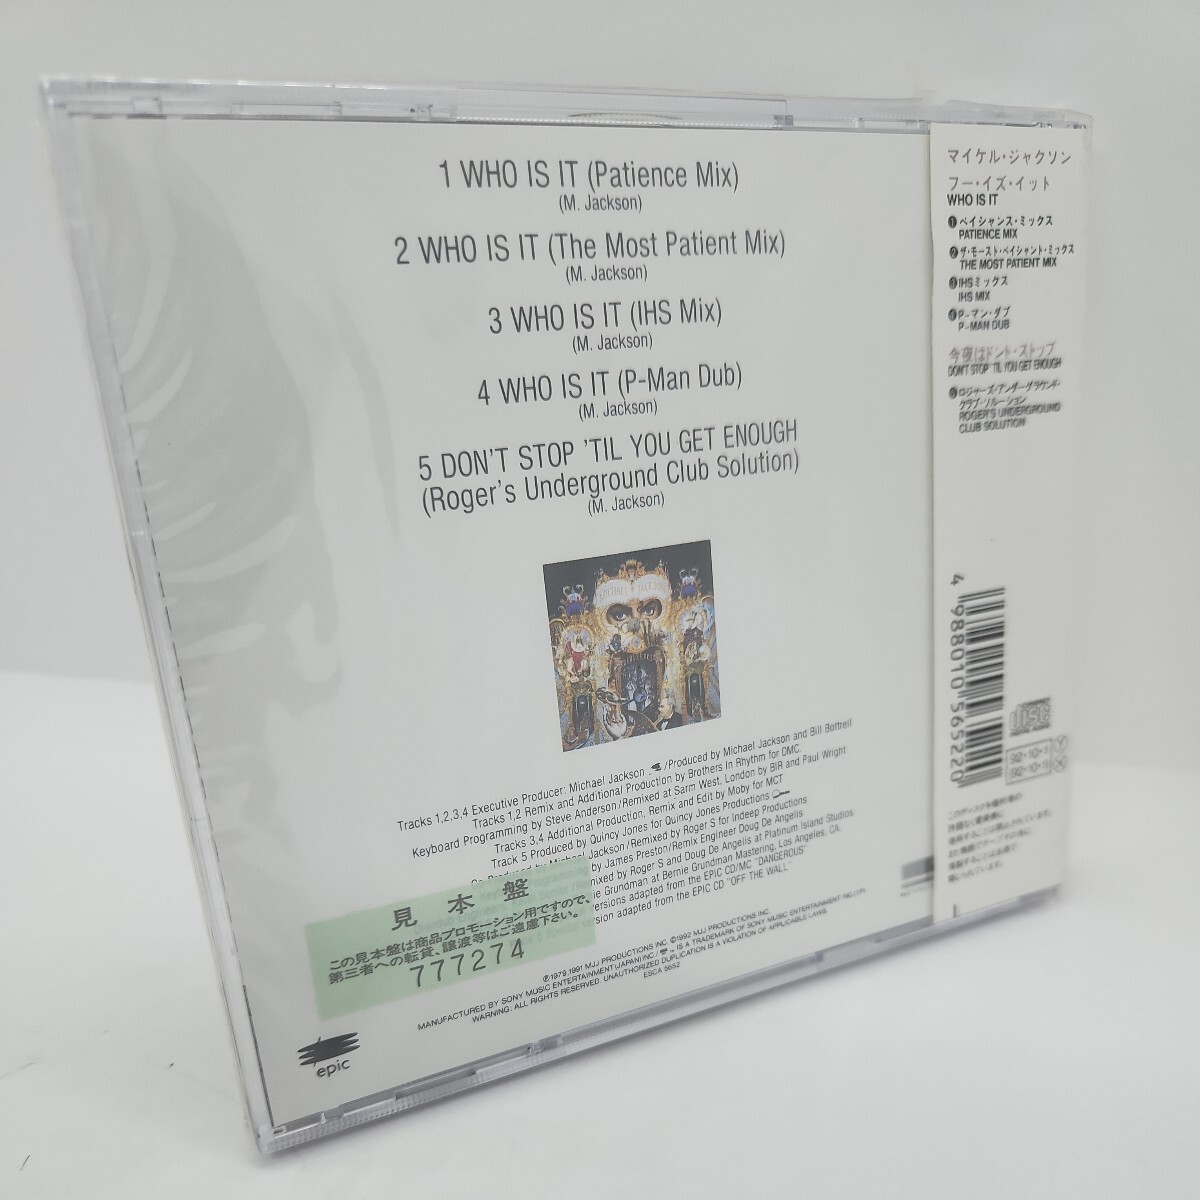  нераспечатанный образец запись CD Michael * Jackson THE WHO IS IT REMIXES MICHAEL JACKSON старый стандарт западная музыка ESCA 5652